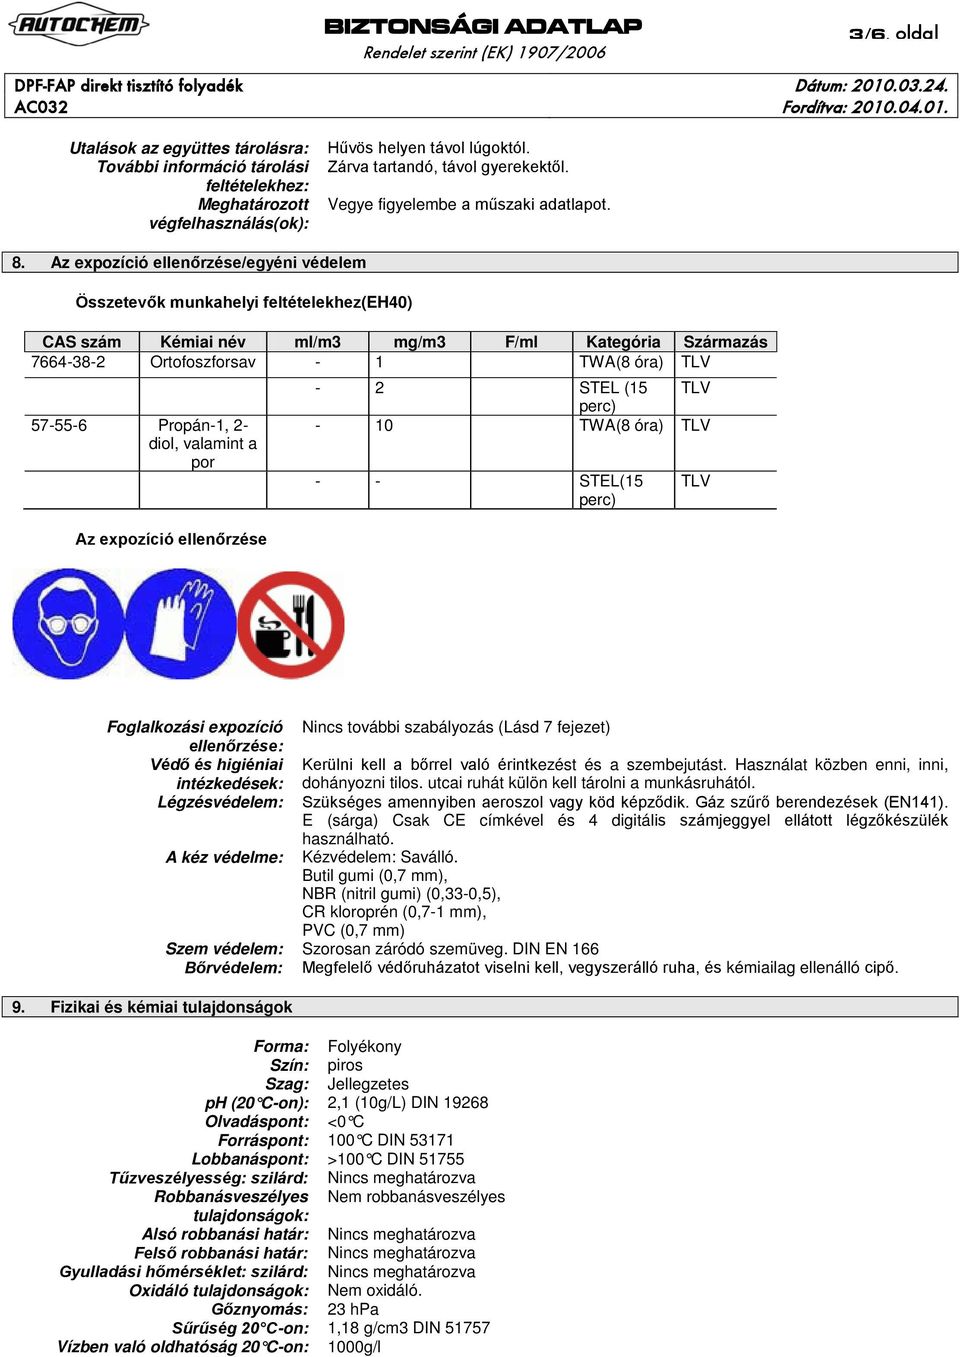 Az expozíció ellenőrzése/egyéni védelem Összetevők munkahelyi feltételekhez(eh40) CAS szám Kémiai név ml/m3 mg/m3 F/ml Kategória Származás 7664-38-2 Ortofoszforsav - 1 TWA(8 óra) TLV 57-55-6